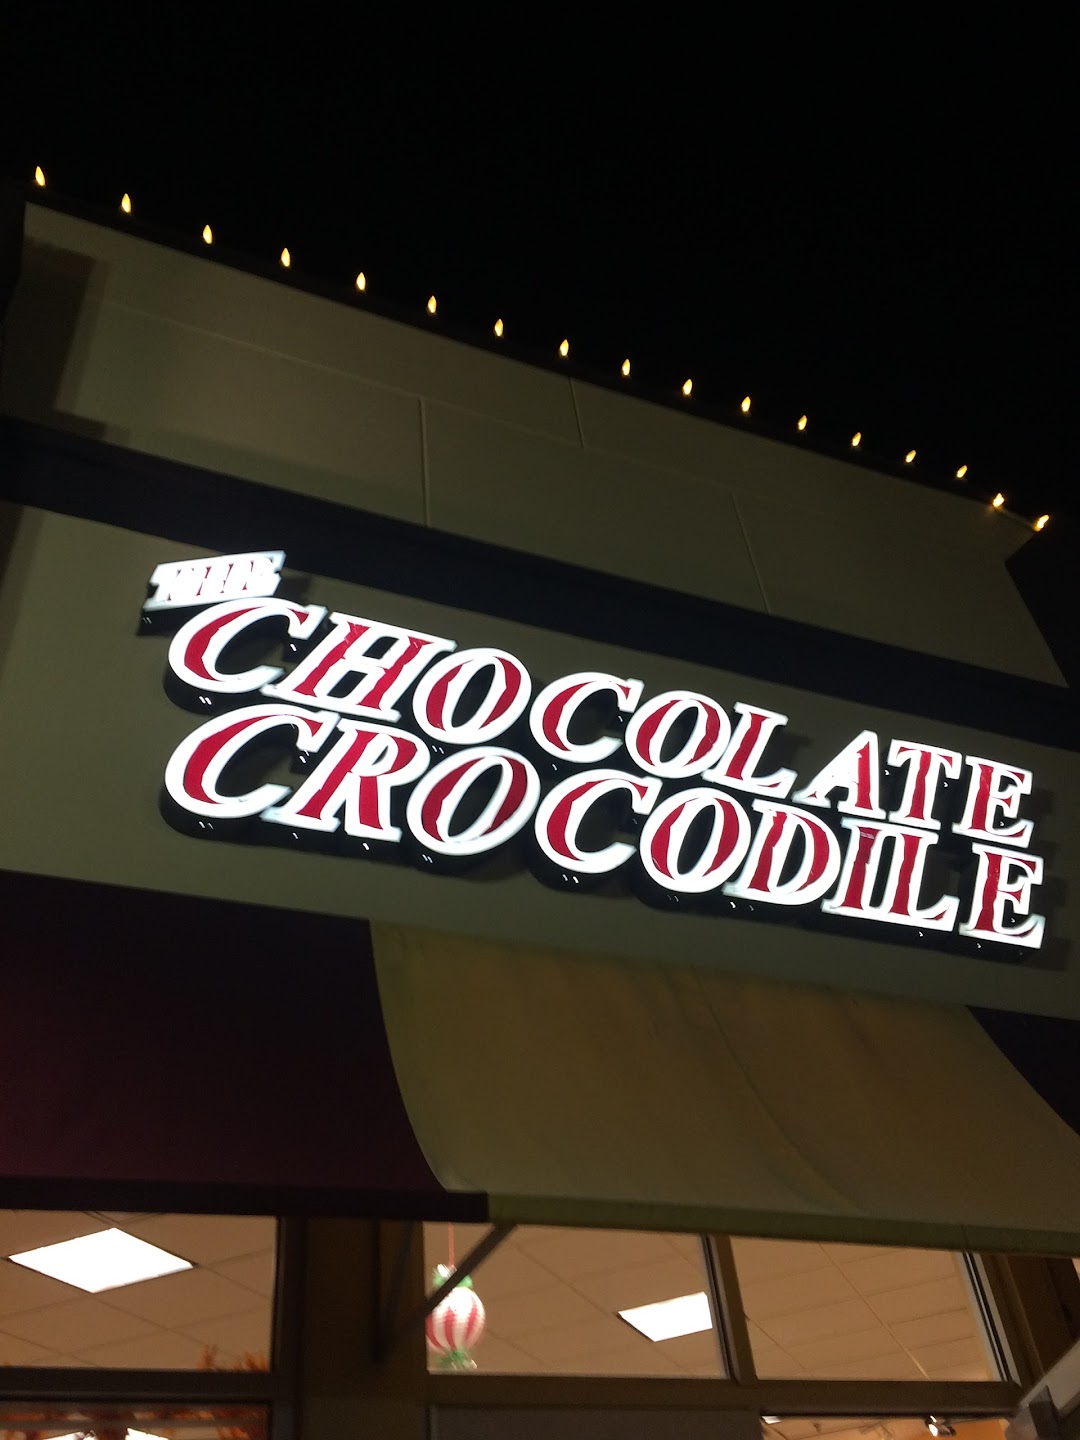 The Chocolate Crocodile